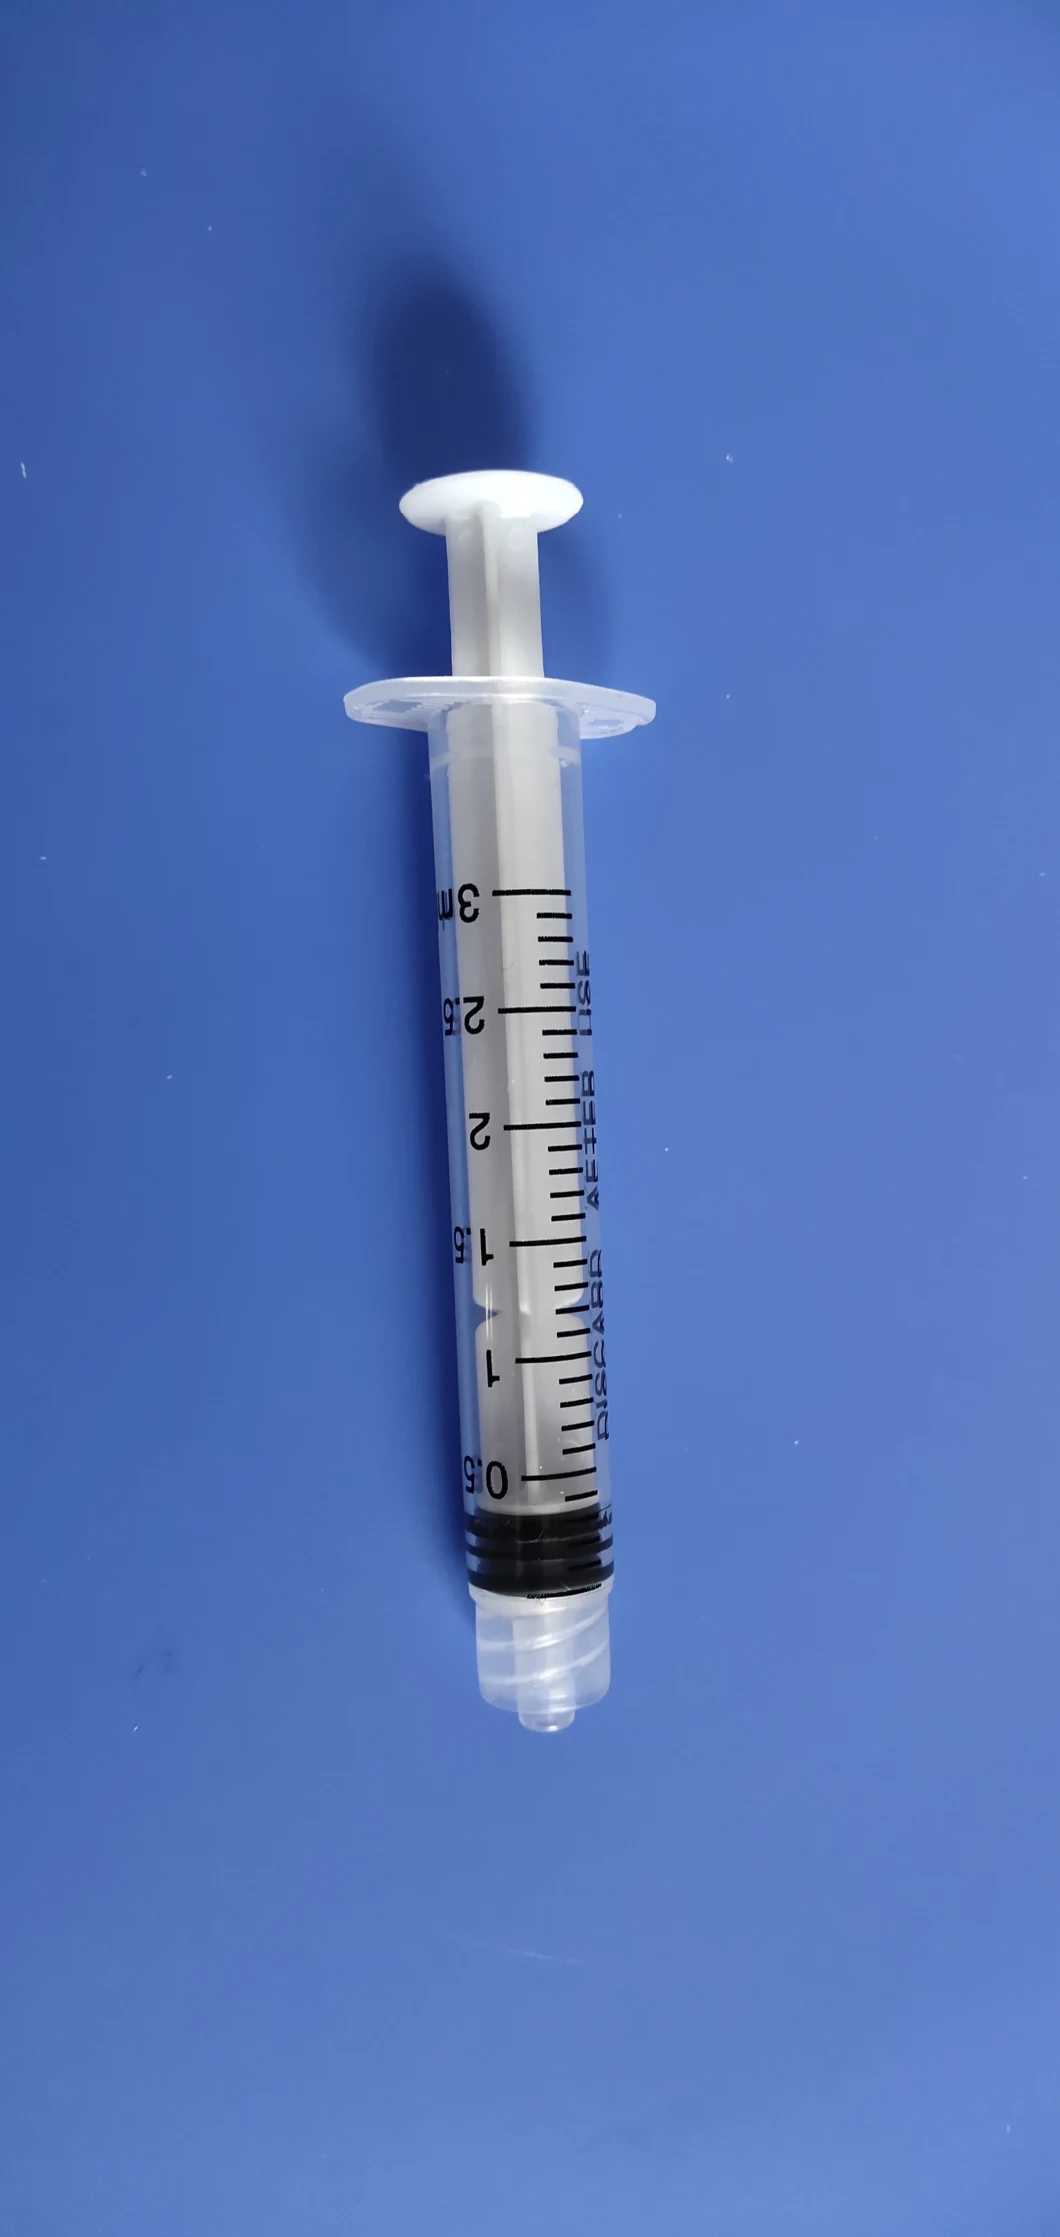 Disposable Sterile Syringe 2ml, Luer Lock, Blister Pack